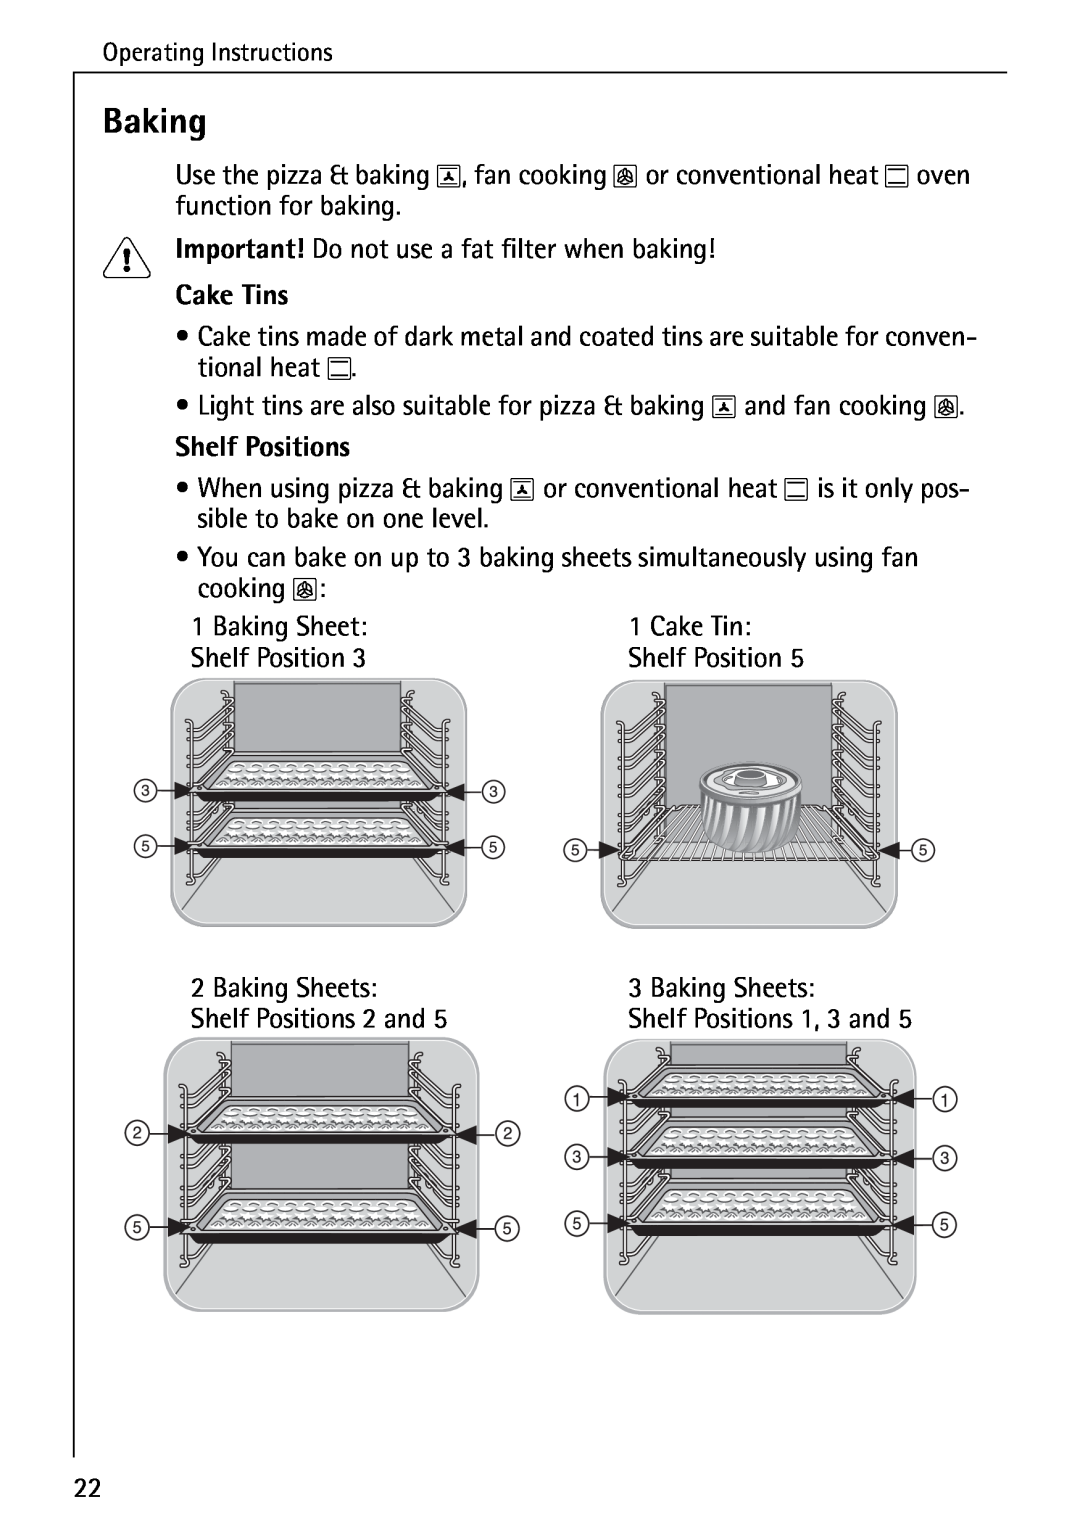 AEG 5033 V operating instructions Baking, Cake Tins, Shelf Positions 